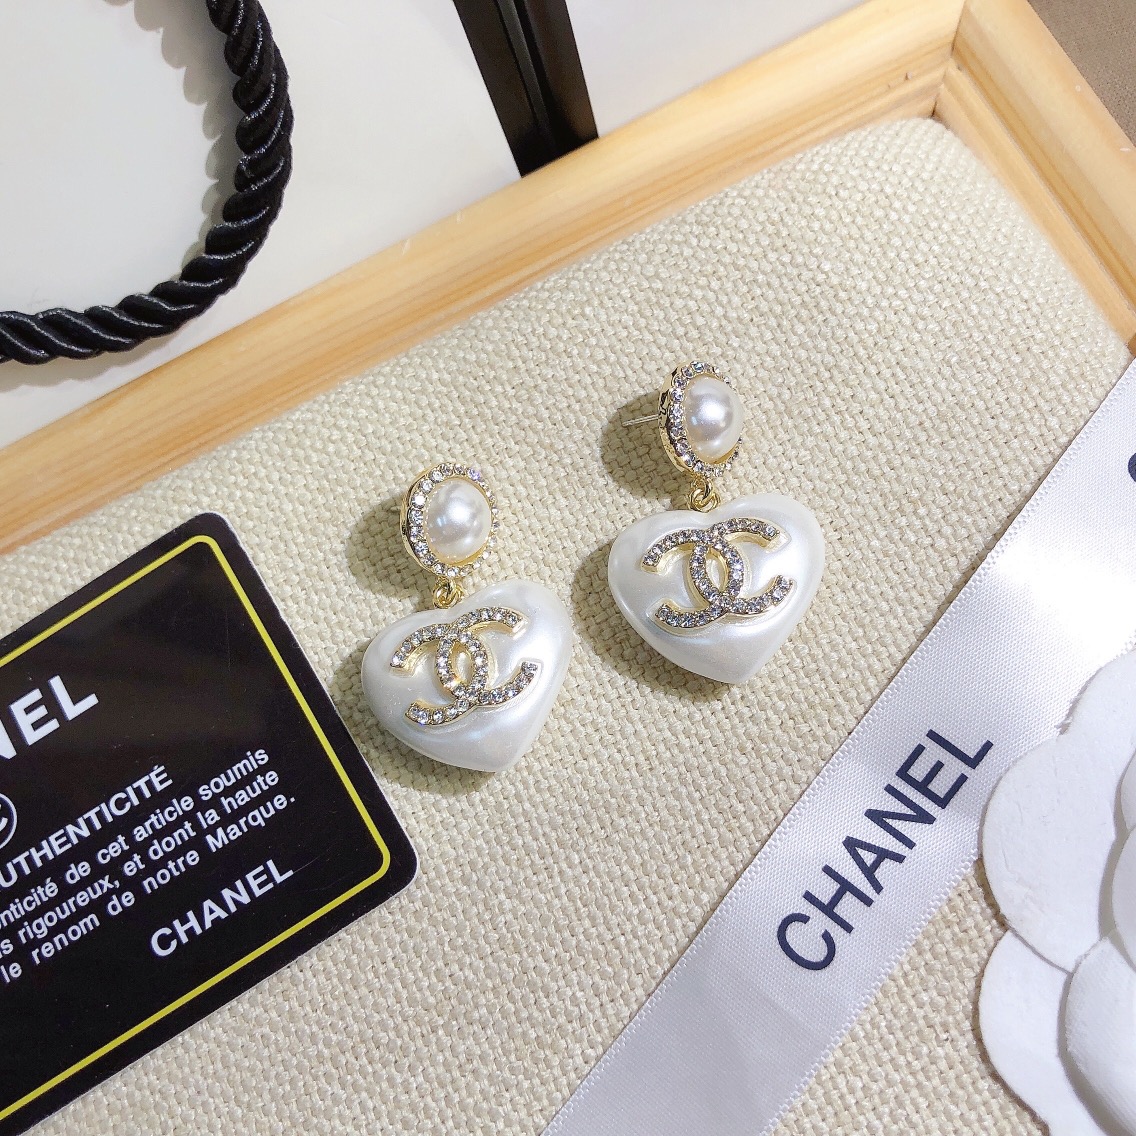 A653   Chanel earring 107409